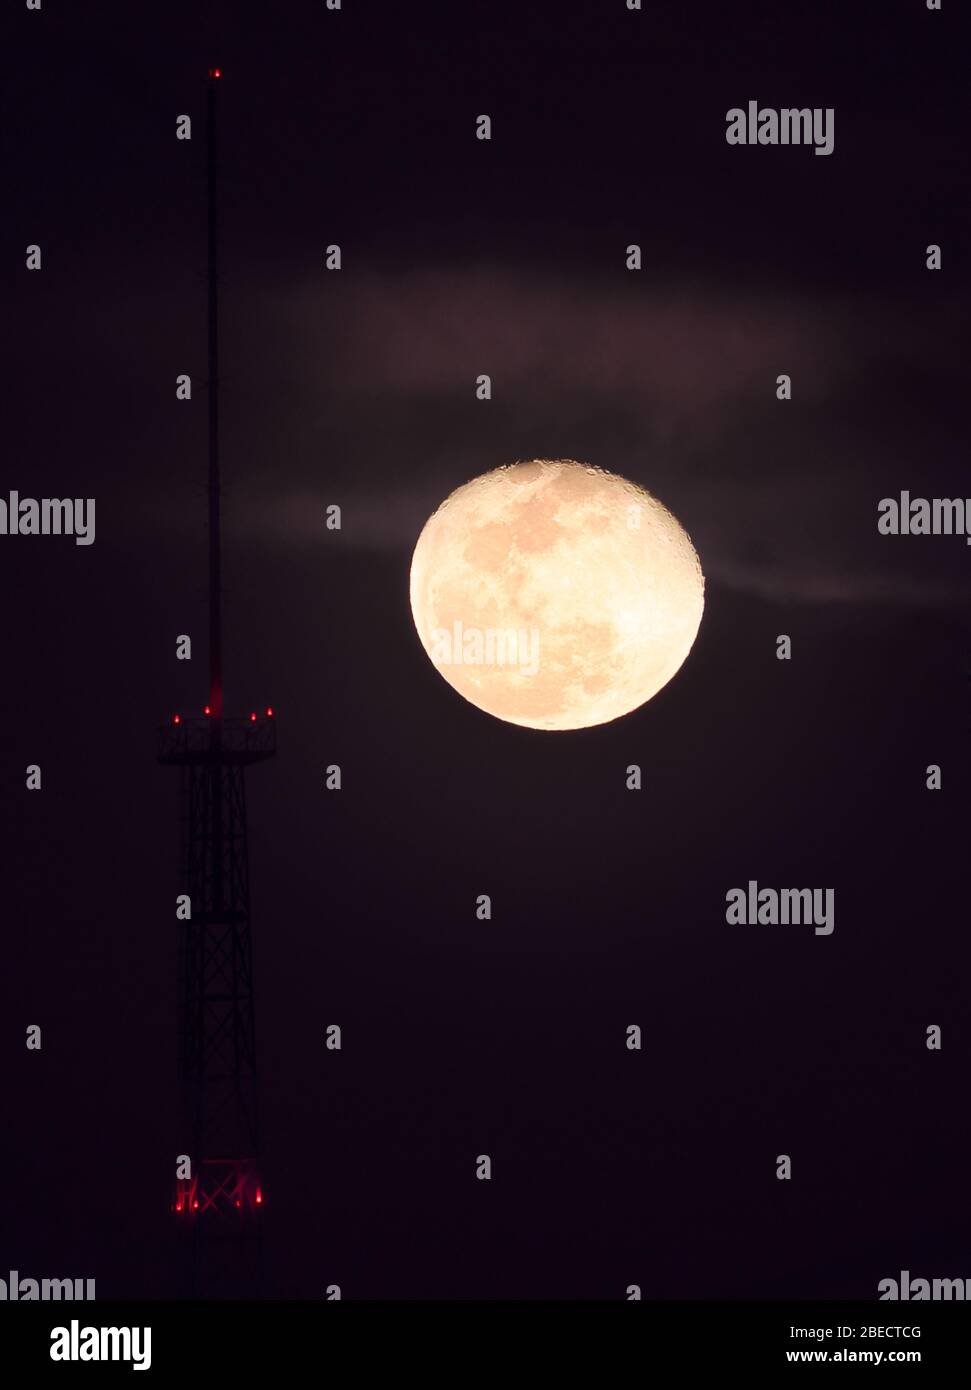 GUADALAJARA, JALISCO / MEXIKO - 09. APRIL 2020. Der Mond beginnt seine schwingende Gibbos-Phase am lichtverschmutzten Himmel der Stadt Guadalajara. Stockfoto